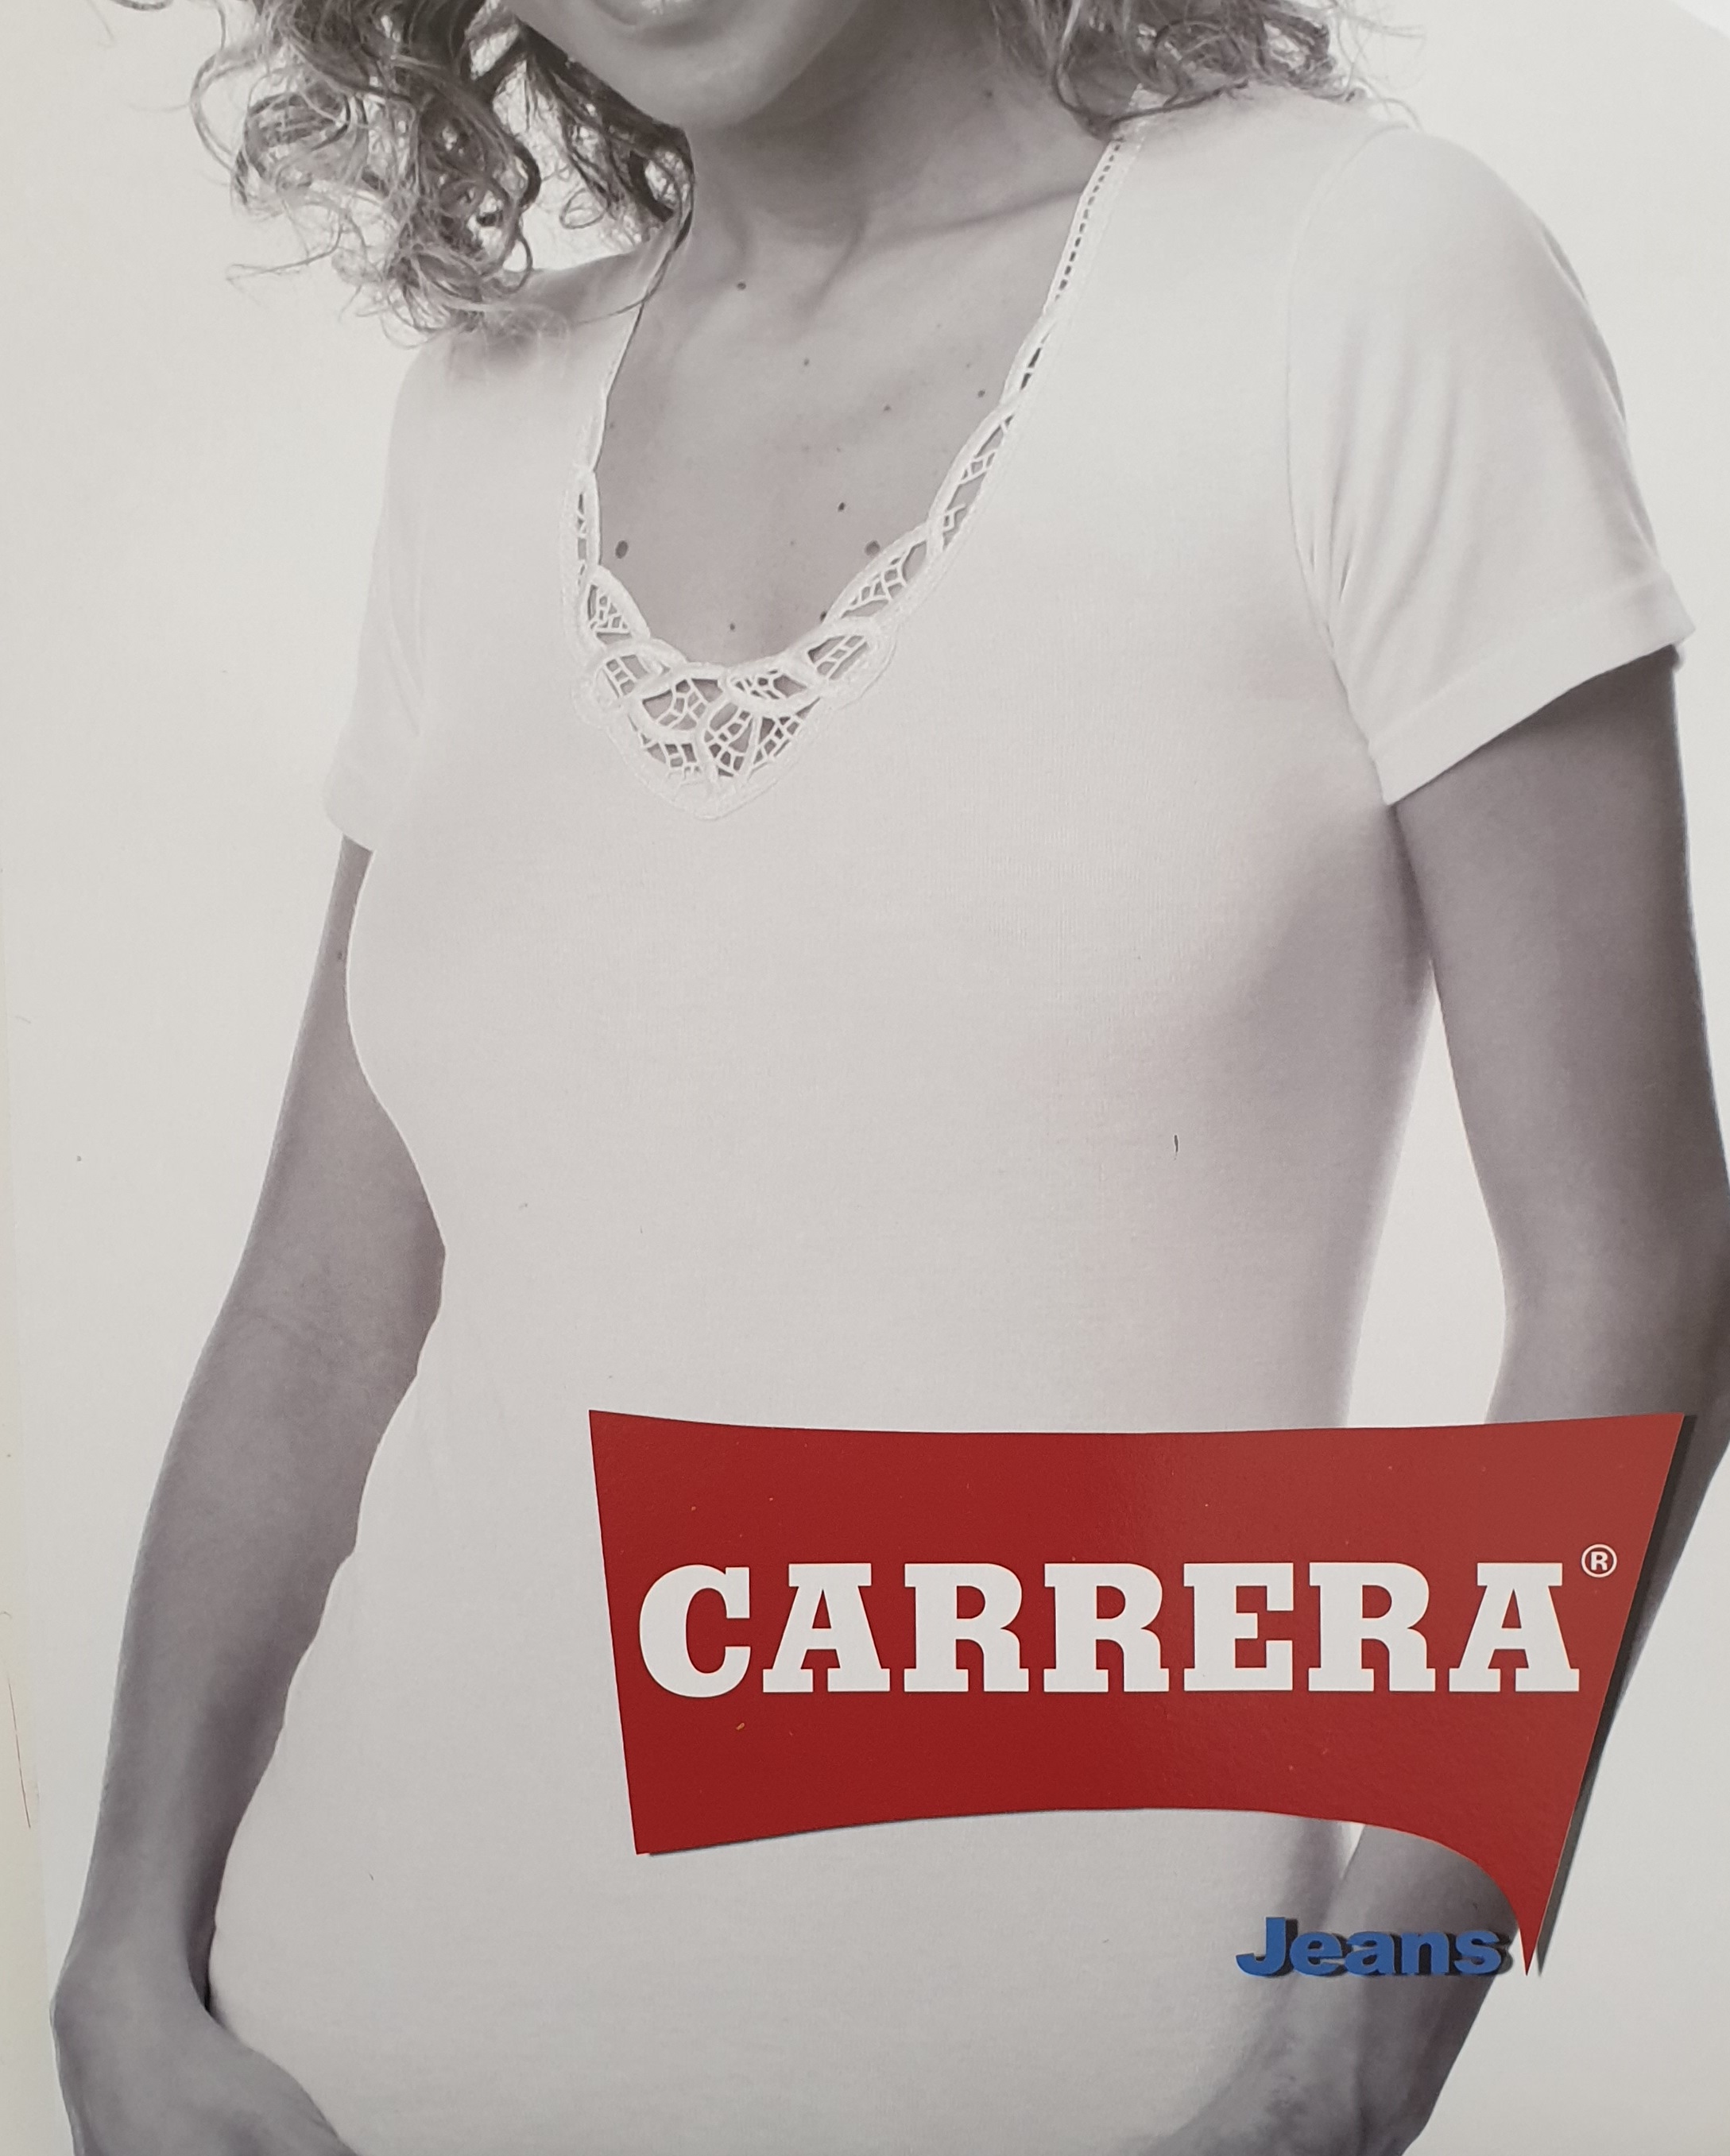 Carrera Carrera maglia mezza manica donna caldo cotone nera art 22500 